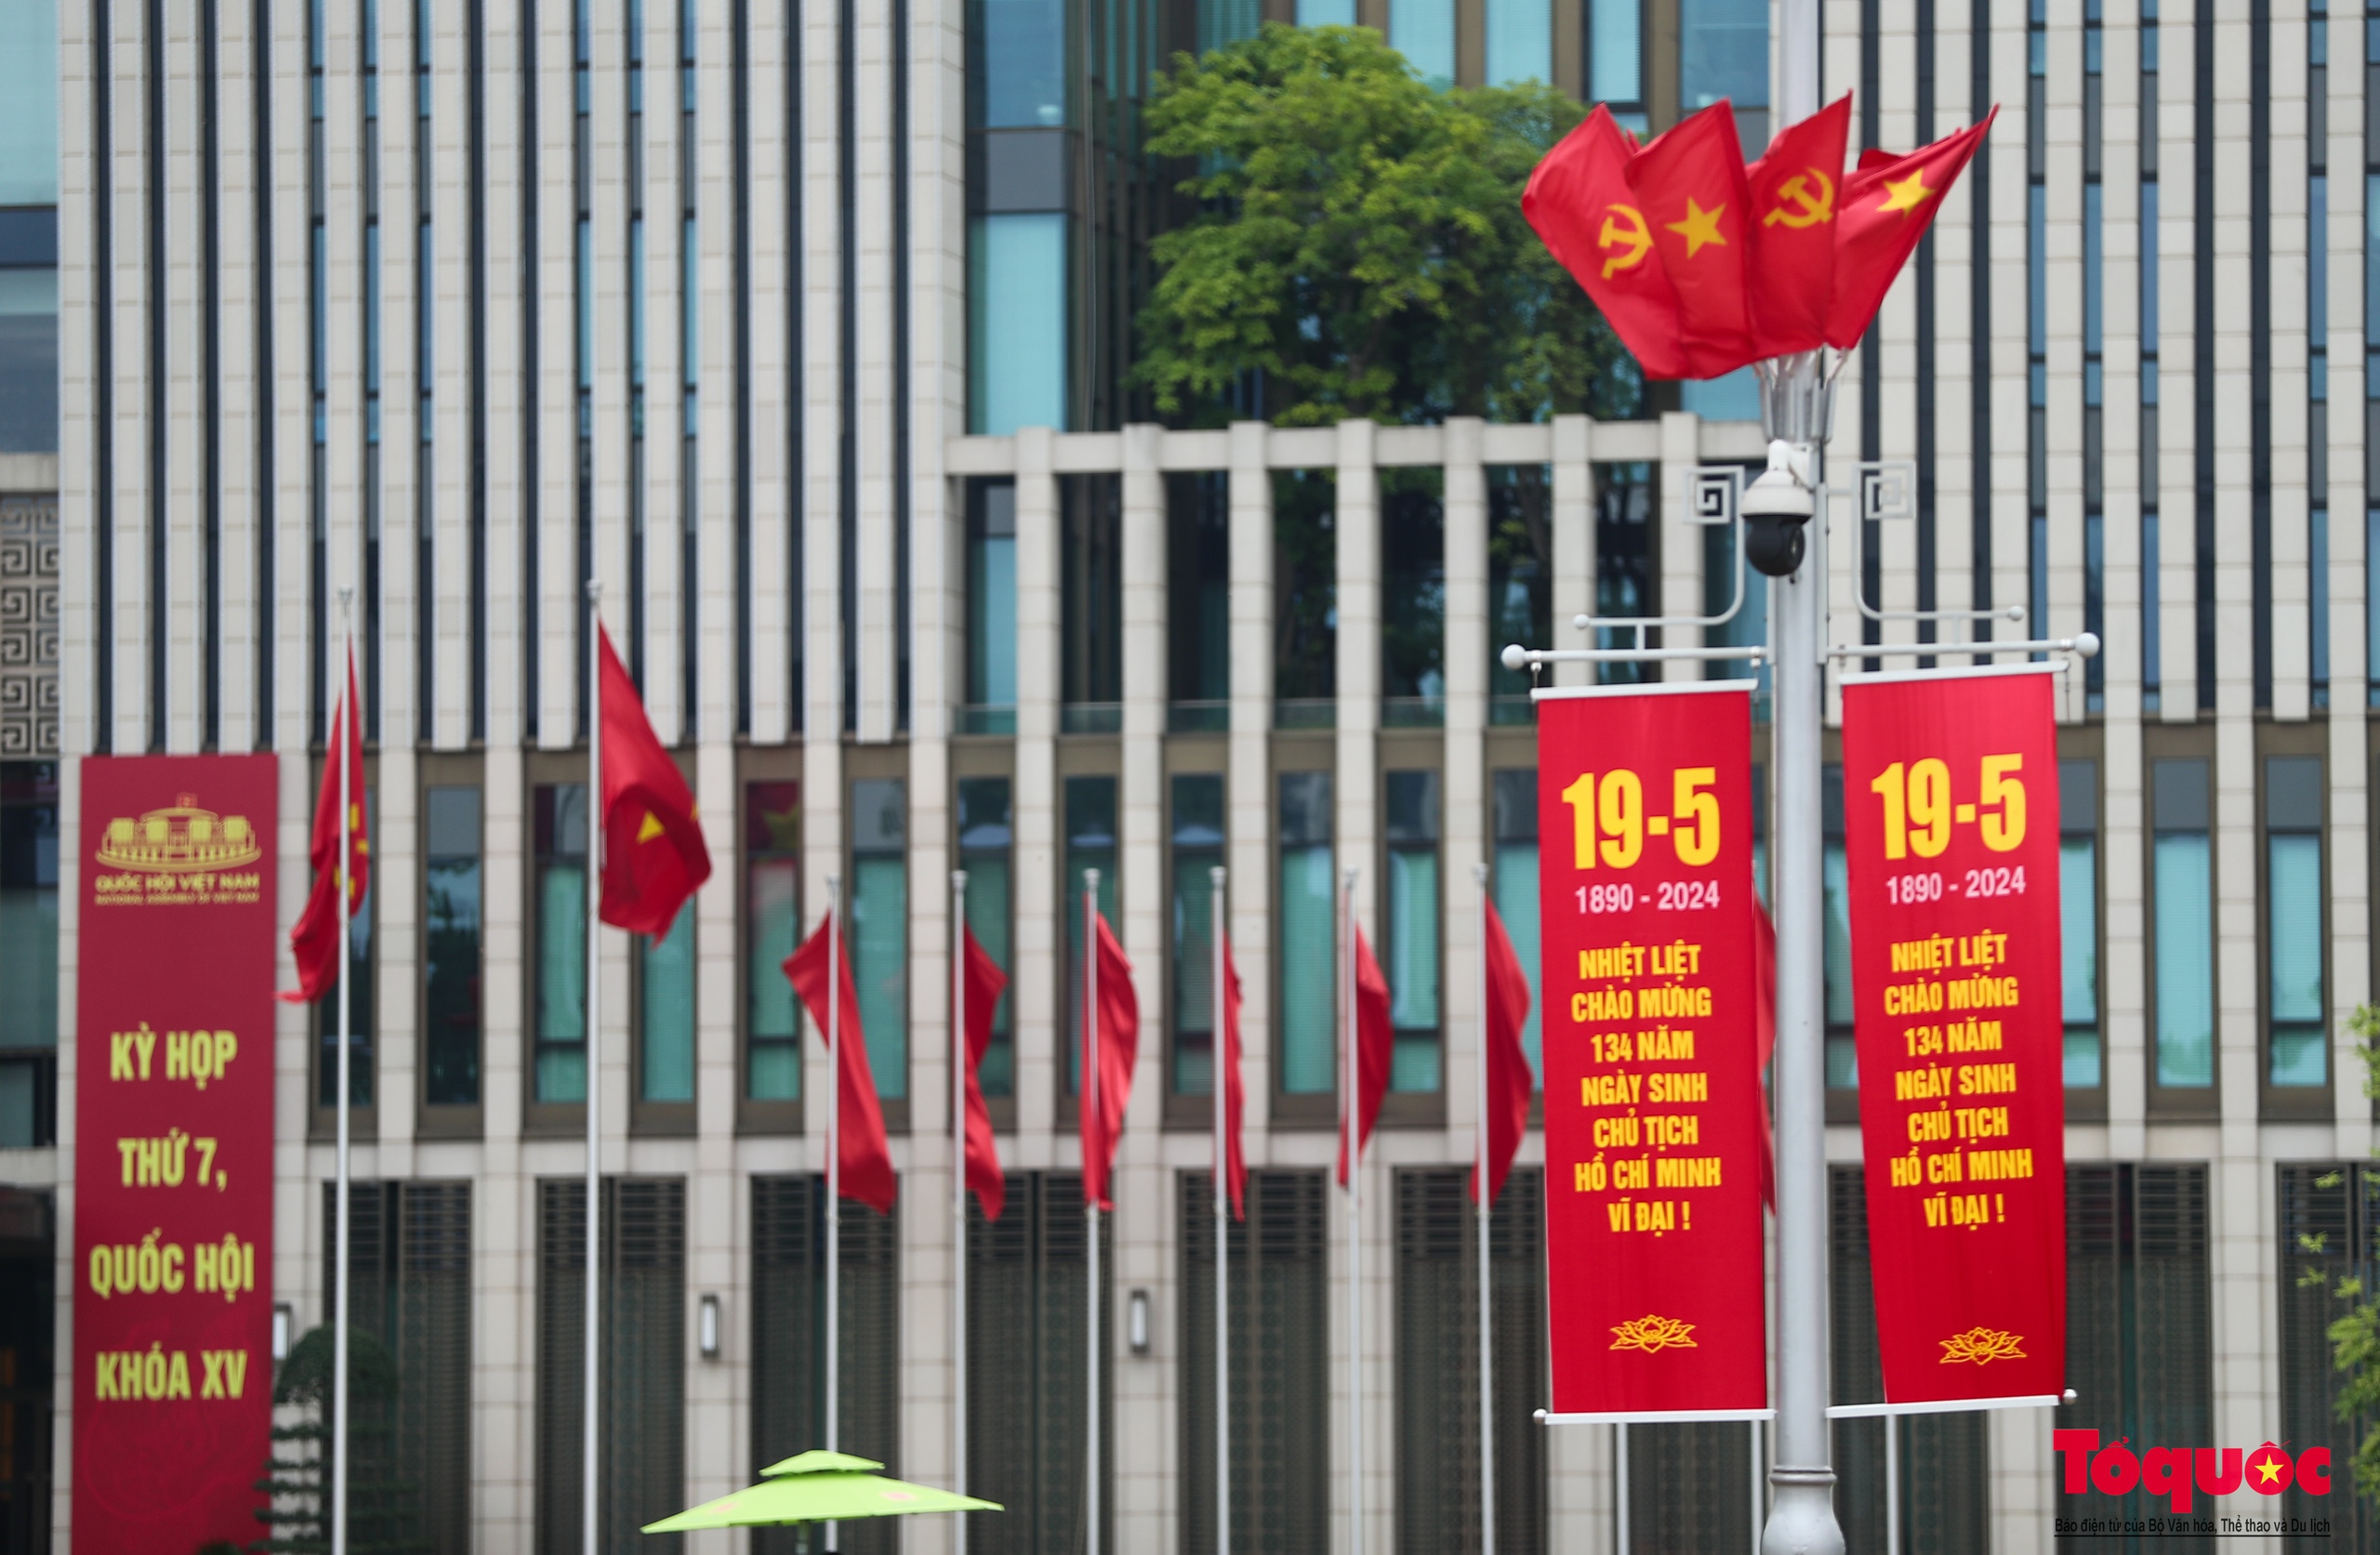 Hà Nội rợp cờ hoa chào mừng kỷ niệm 134 năm Ngày sinh Chủ tịch Hồ Chí Minh - Ảnh 3.